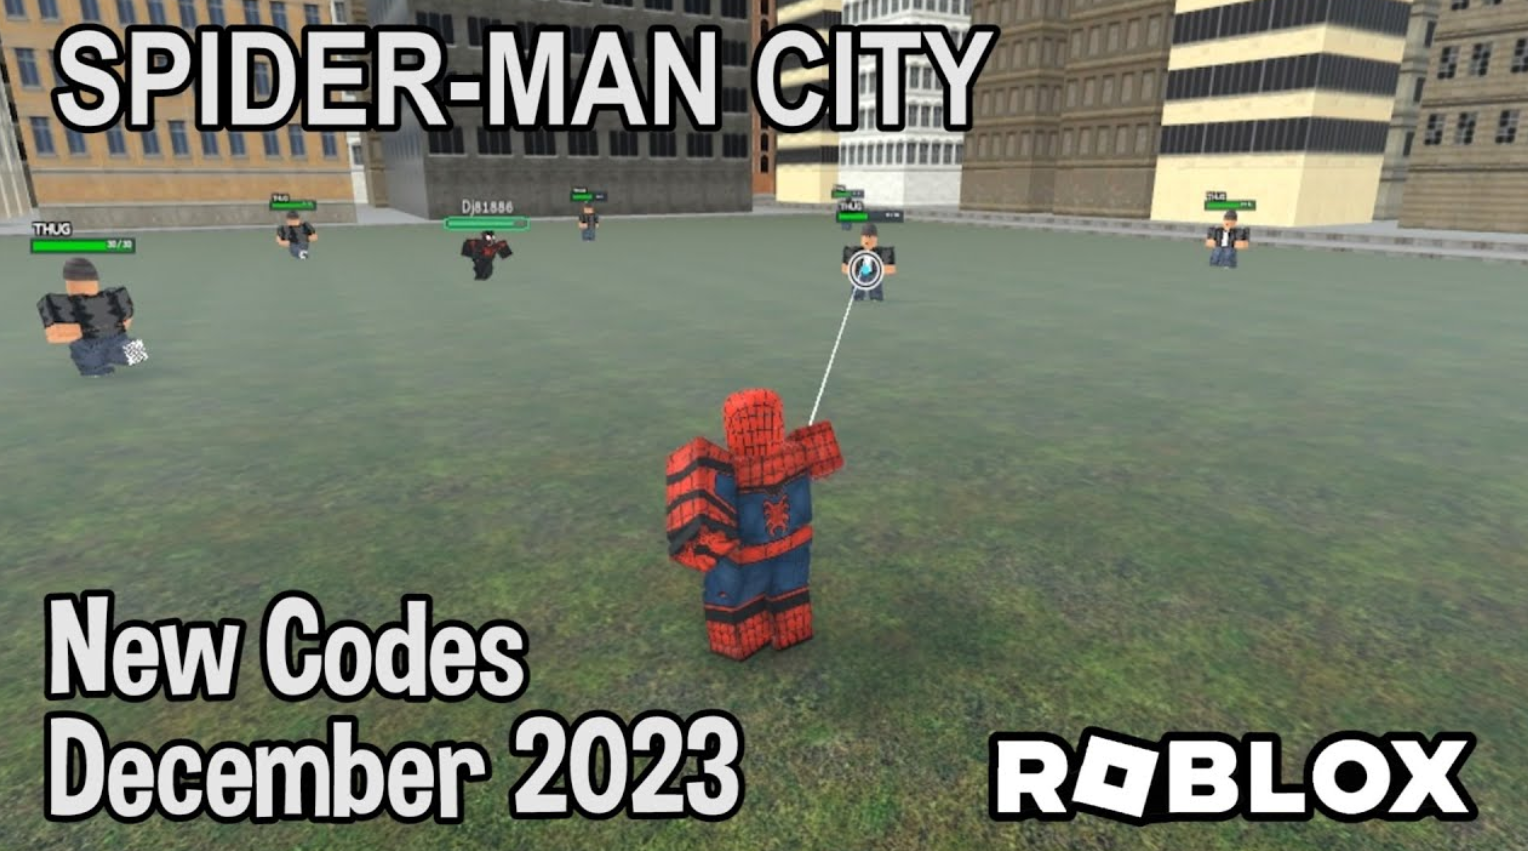 Spider Man City Codes December 2023